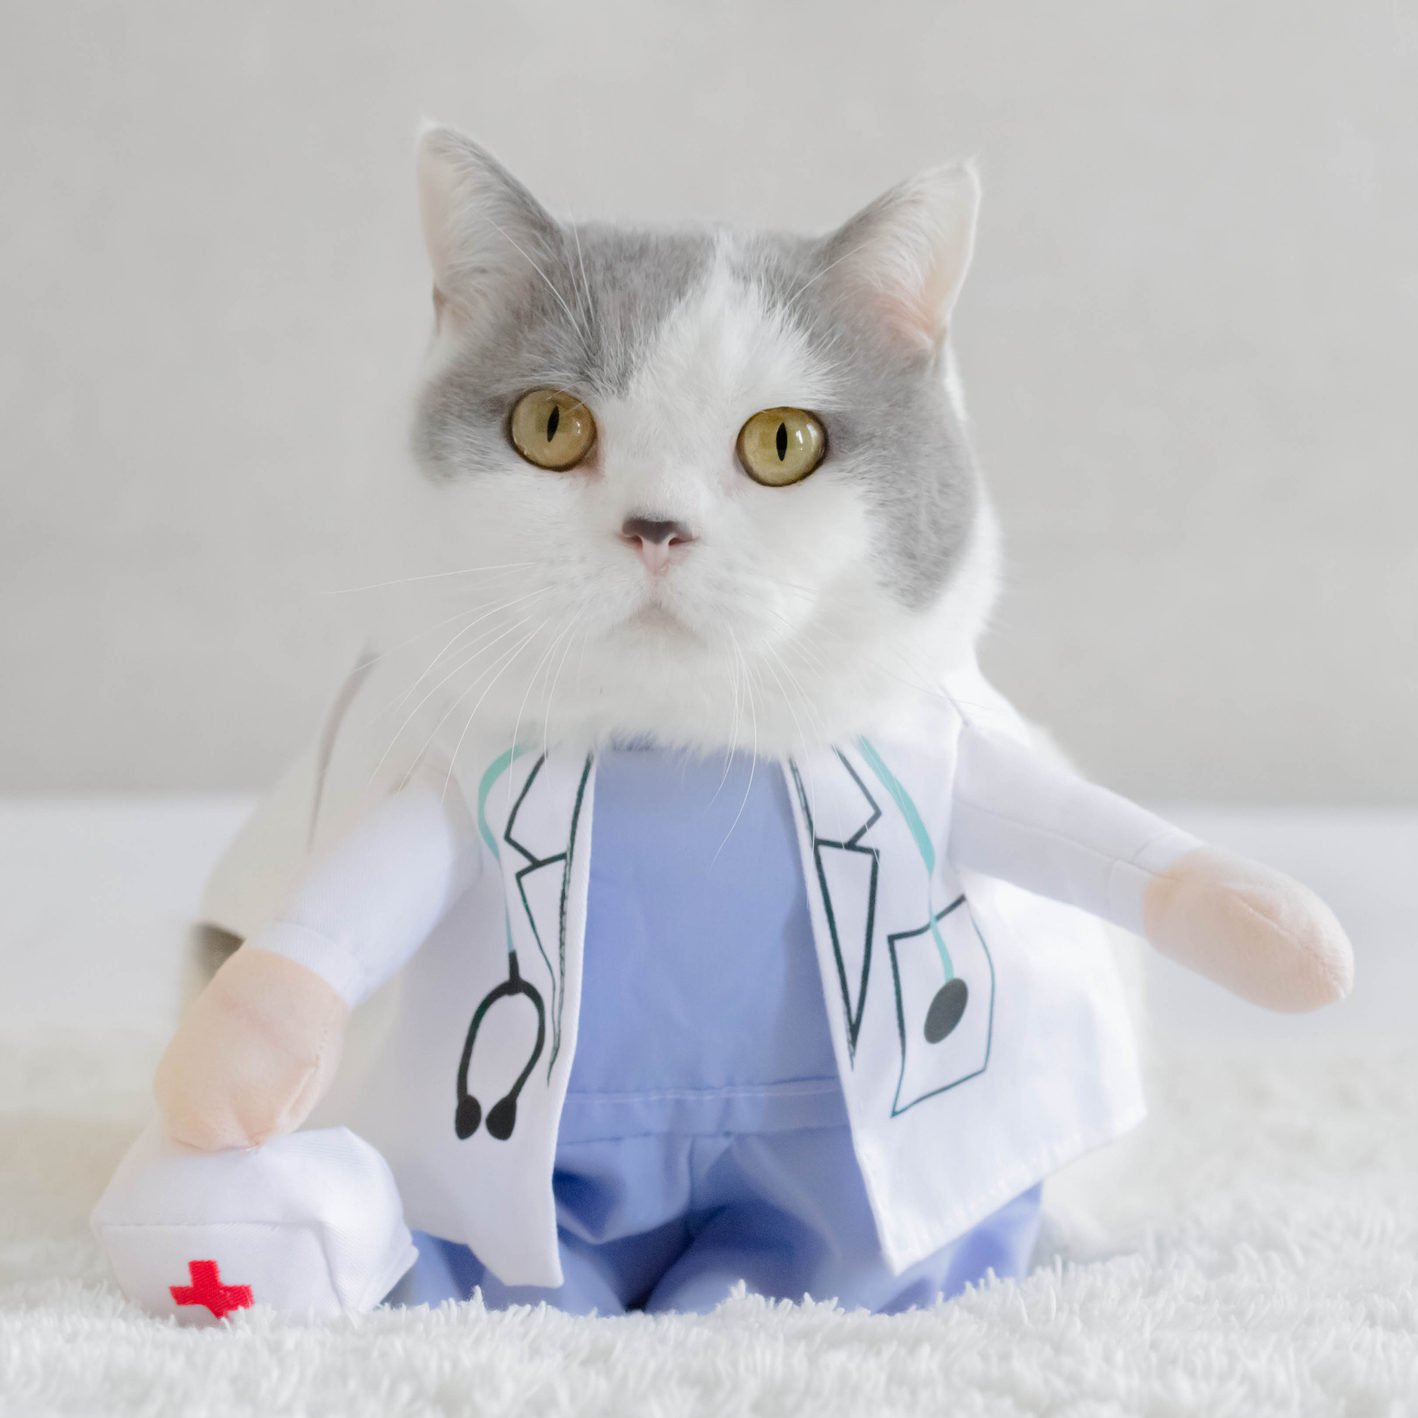 صيدلية إيجى فيت لعلاج القطط| Egy Vet pharmacy for cat